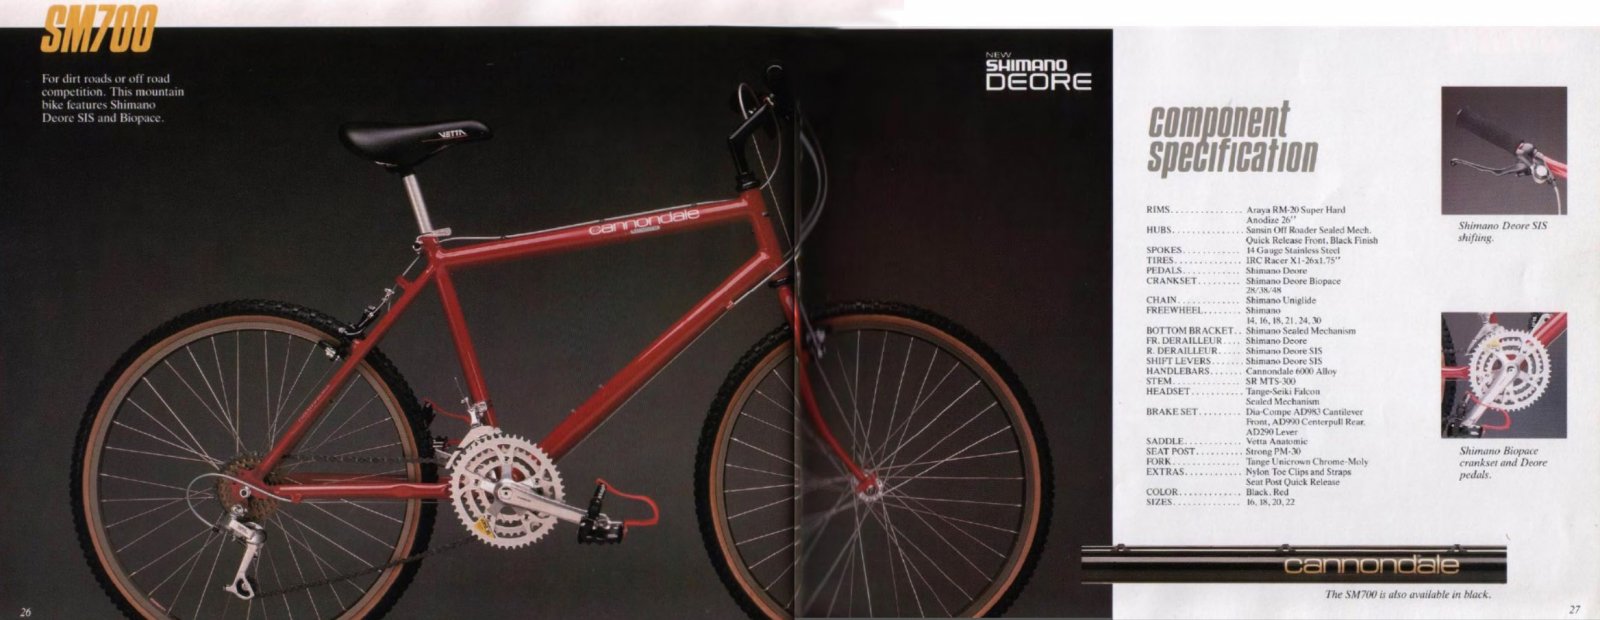 Verkauft - Cannondale SM700 von 1988 M/18 in ziemlich gutem Orginalzustand  | MTB-News.de | IBC Mountainbike Forum